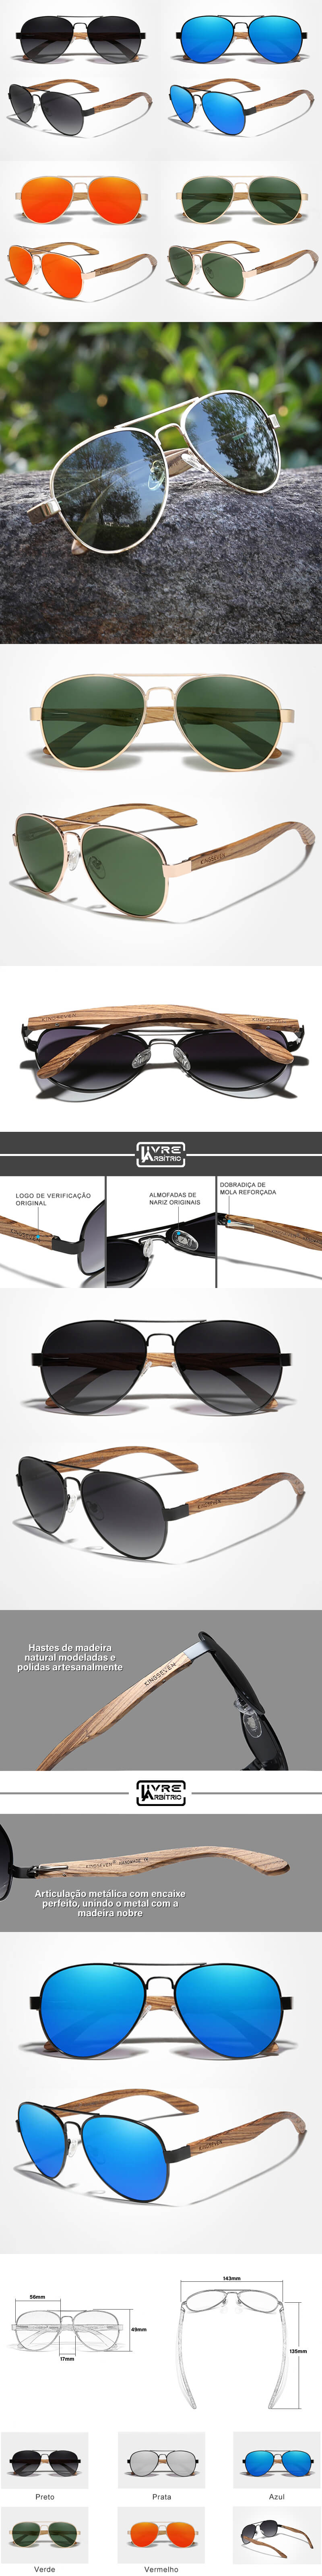 Óculos de Sol de Madeira e Metal Proteção UV400 Polarizado - VINTAGE WOOD